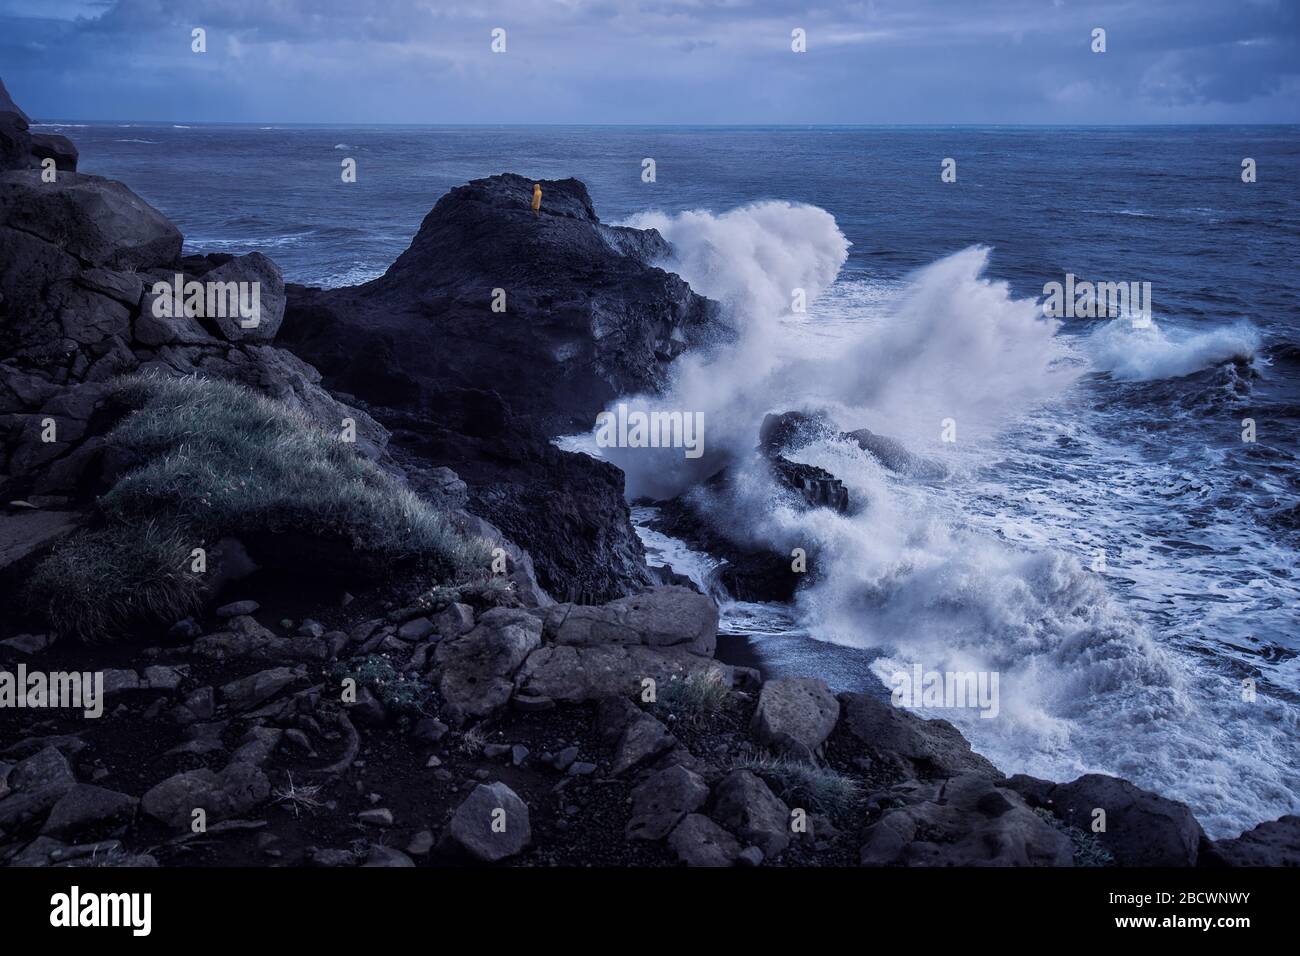 Homme en imperméable jaune debout au bord de la falaise avec d'énormes vagues se brisant contre lui le jour de la tempête à Dyrholaey, Islande Banque D'Images